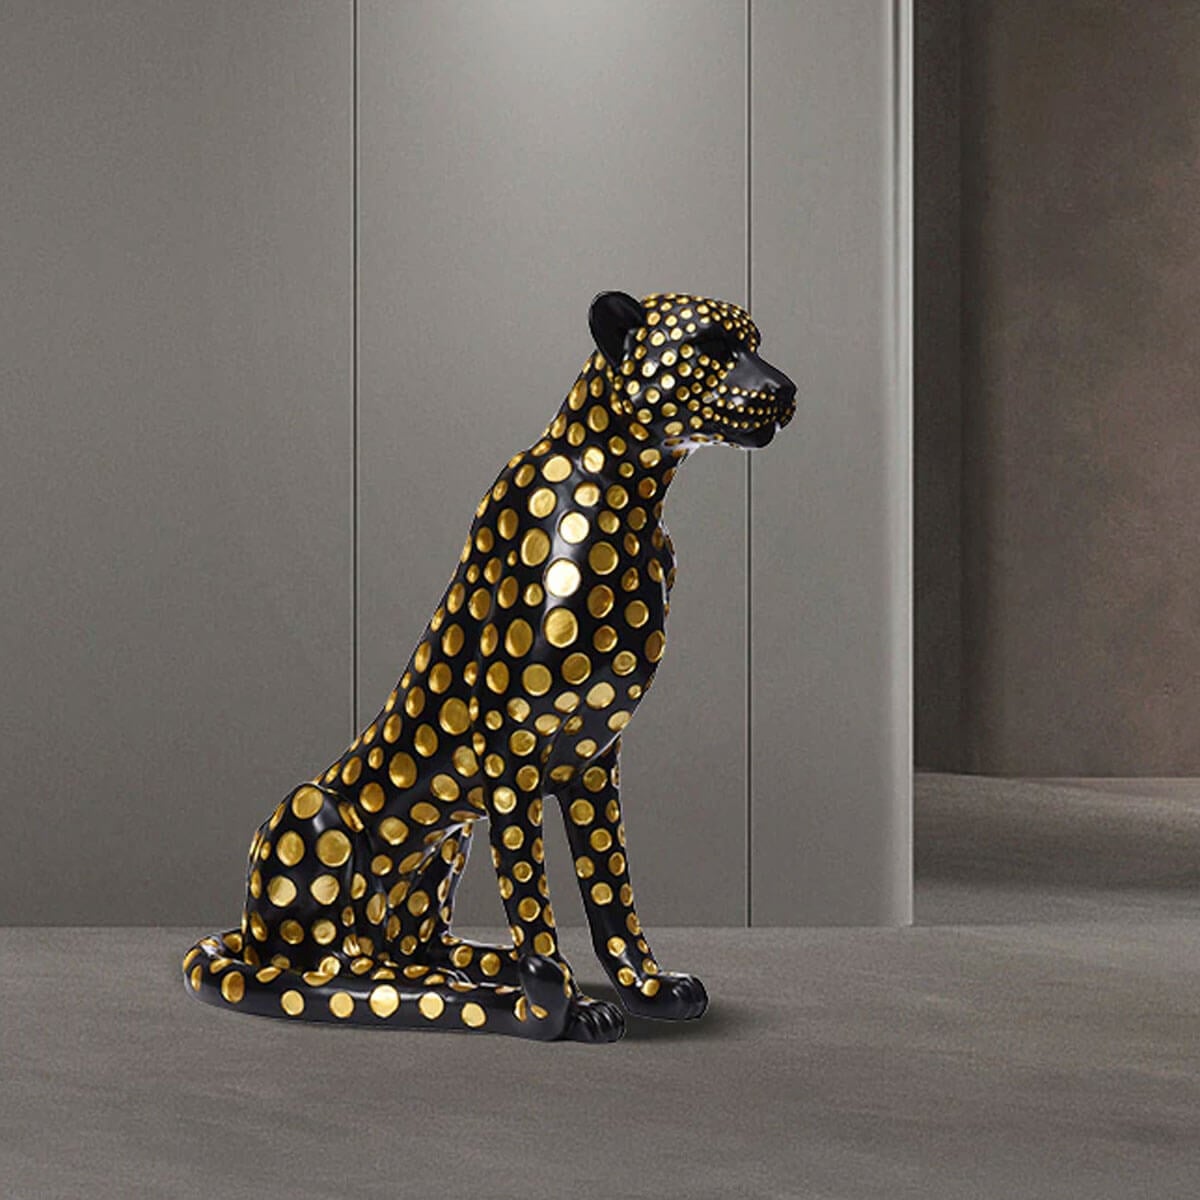 Flocking Leopard Statue Modern Animal Design Sculpture